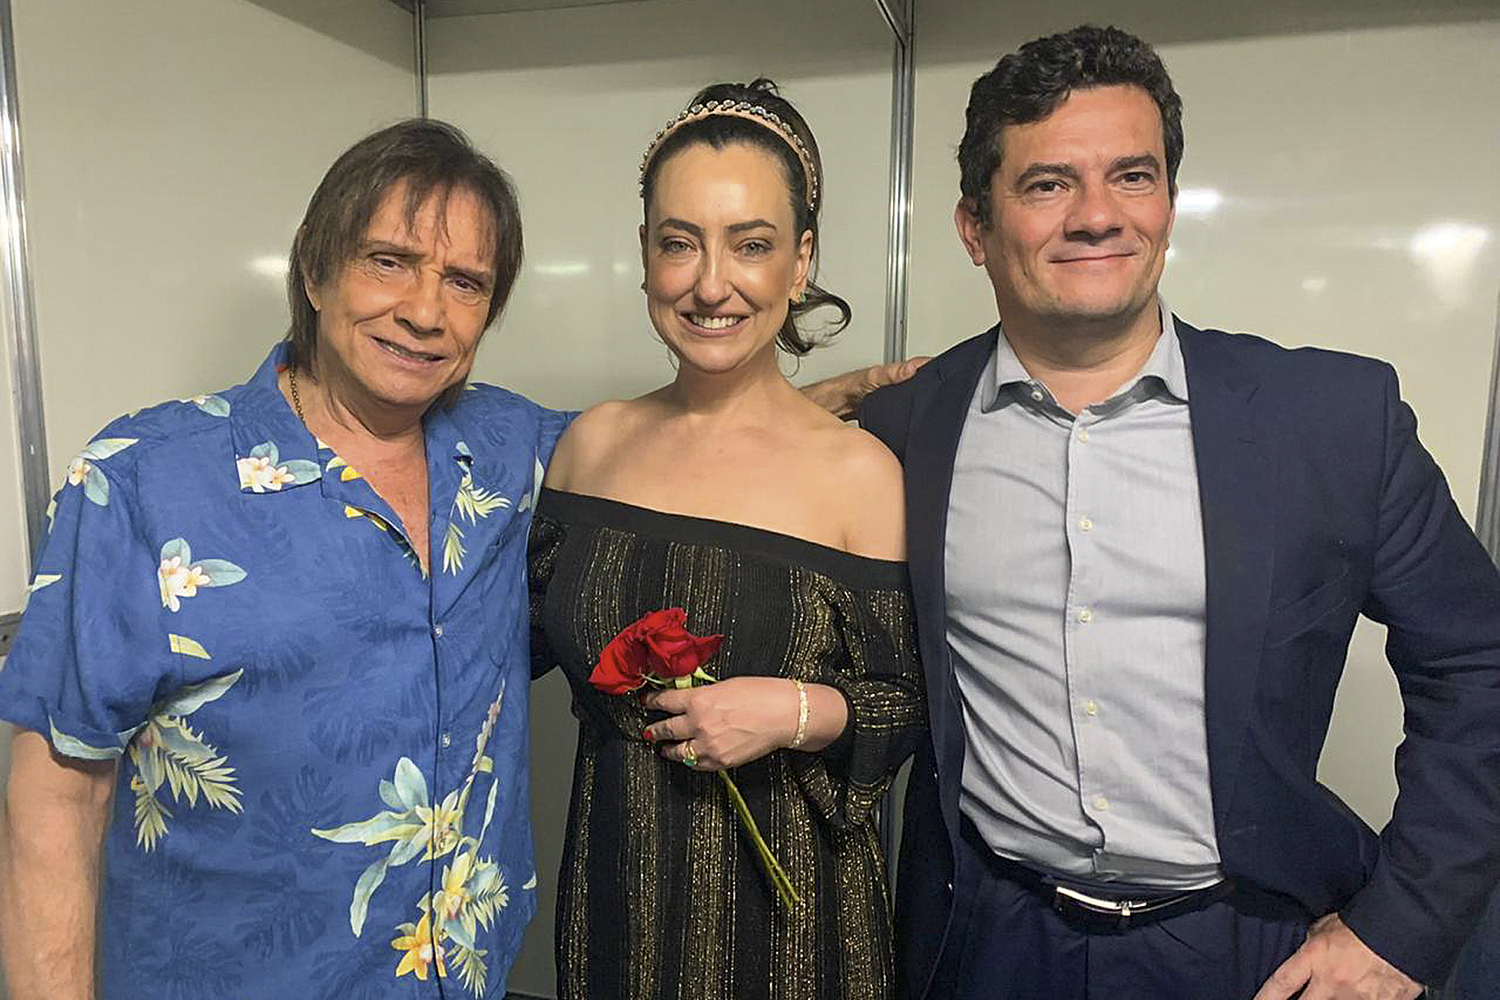 O REI - Roberto Carlos com Sergio Moro e a mulher, em 2019: não a Bolsonaro -